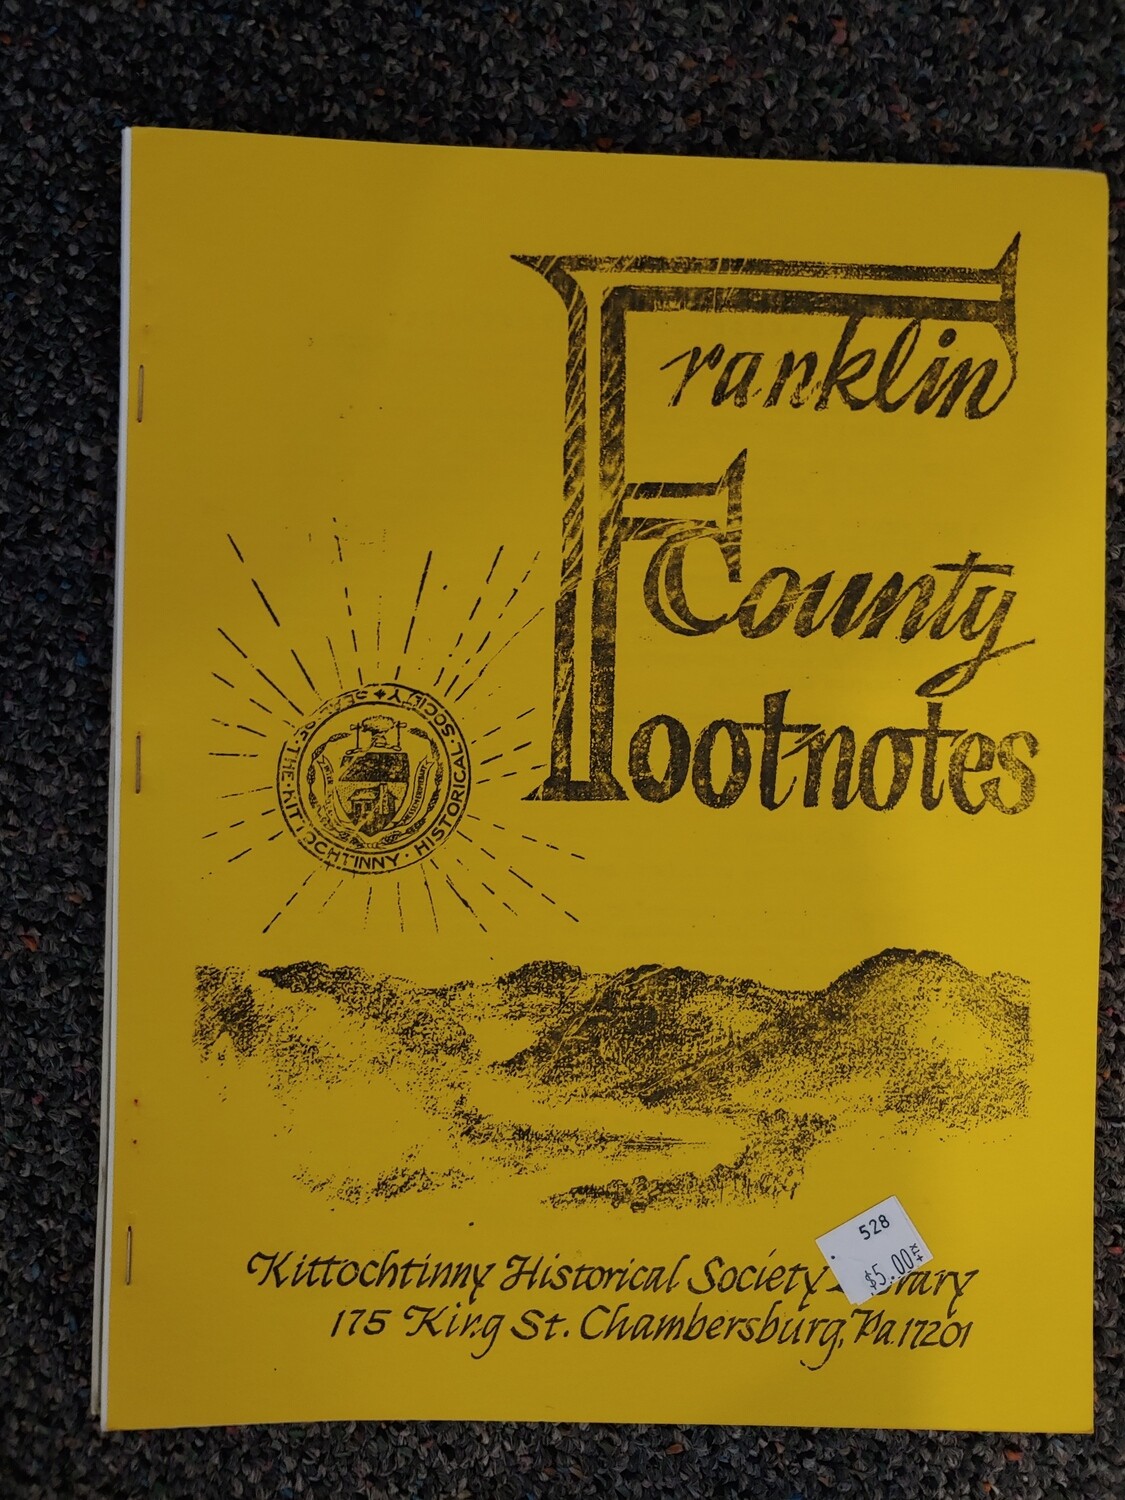 Franklin County Footnotes 1983 (KHS) Vol. 4 No. 3